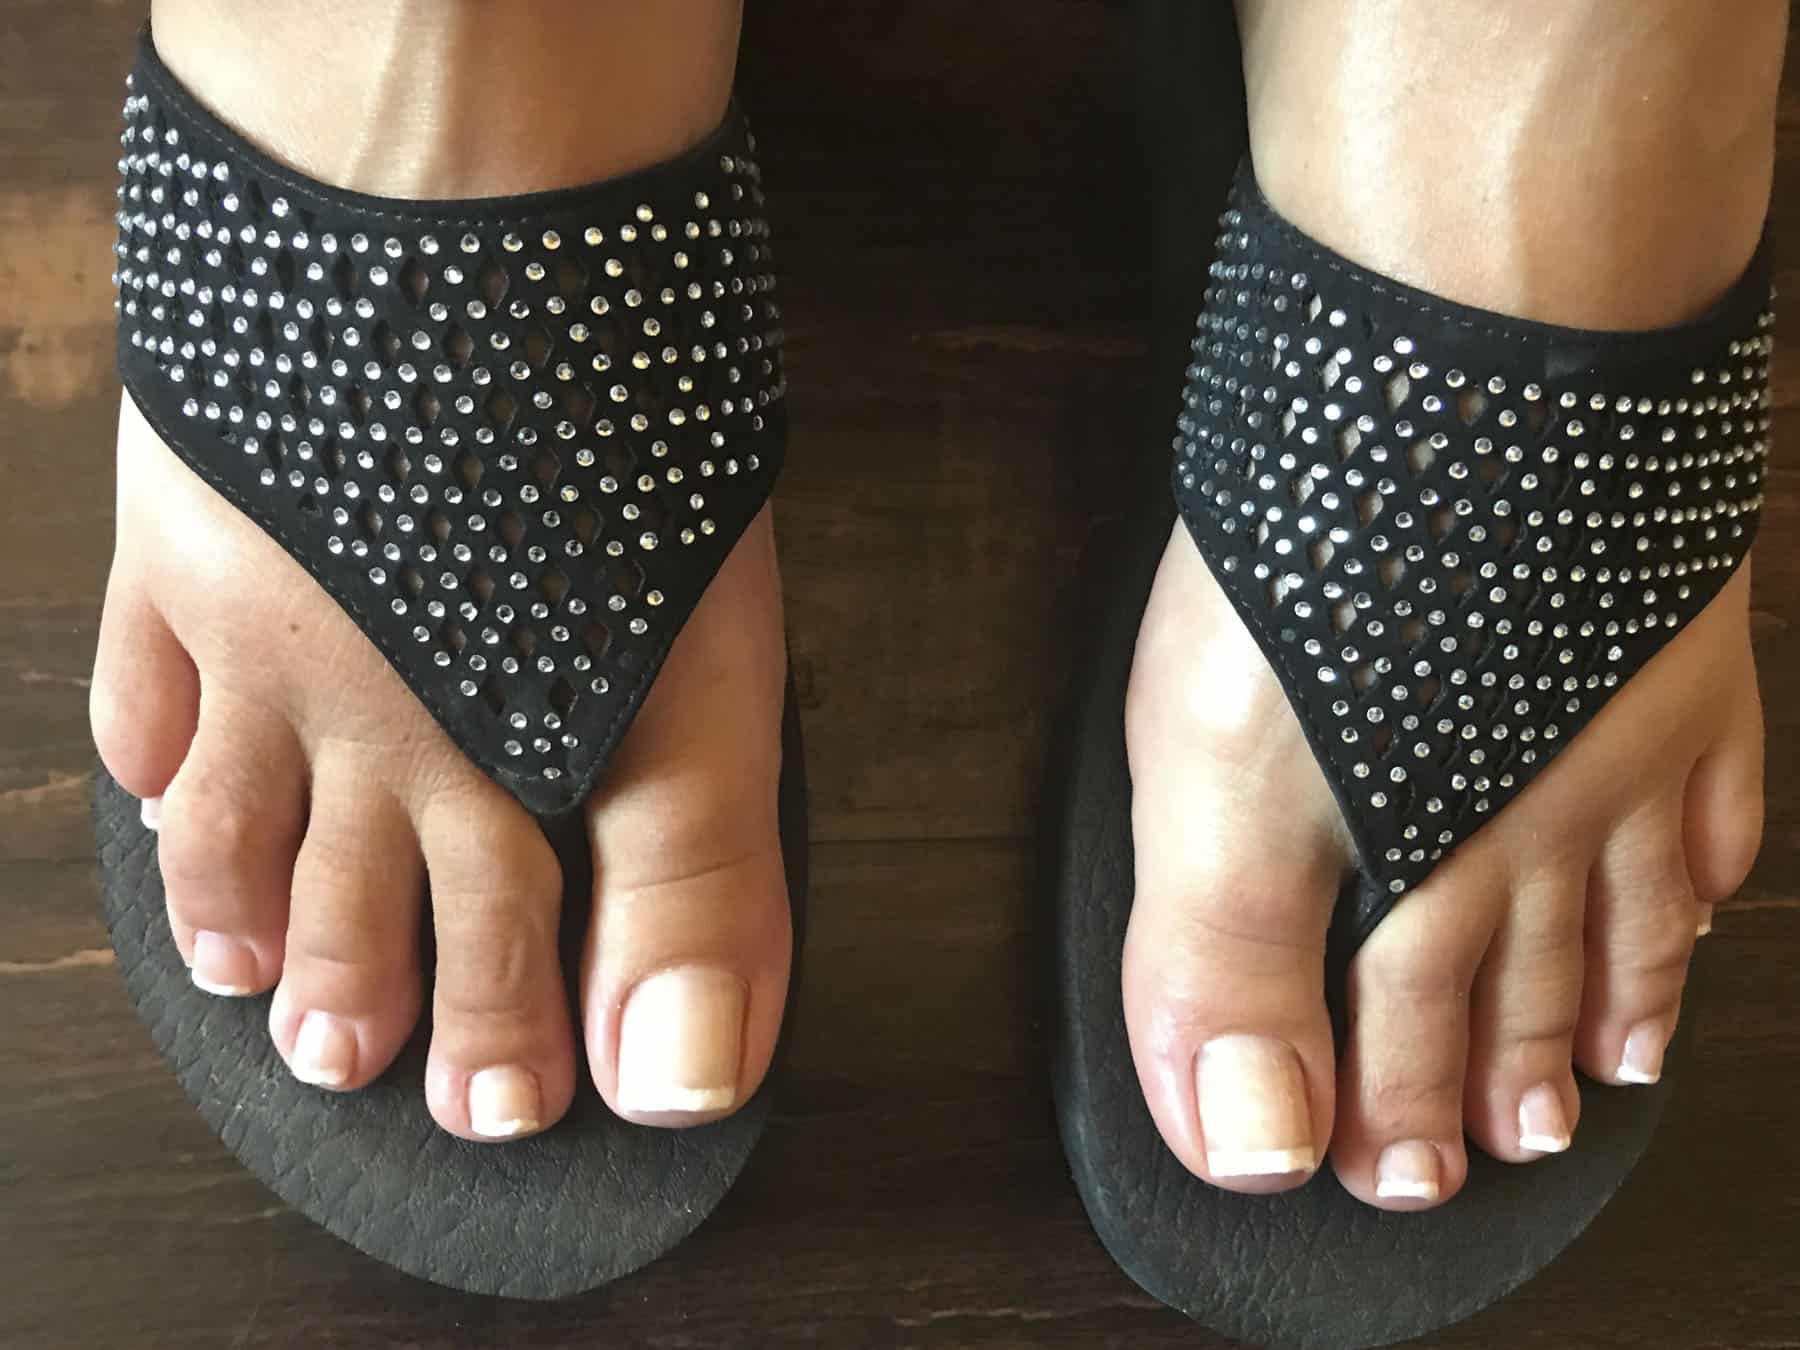 Photo of feet wearing flip flops